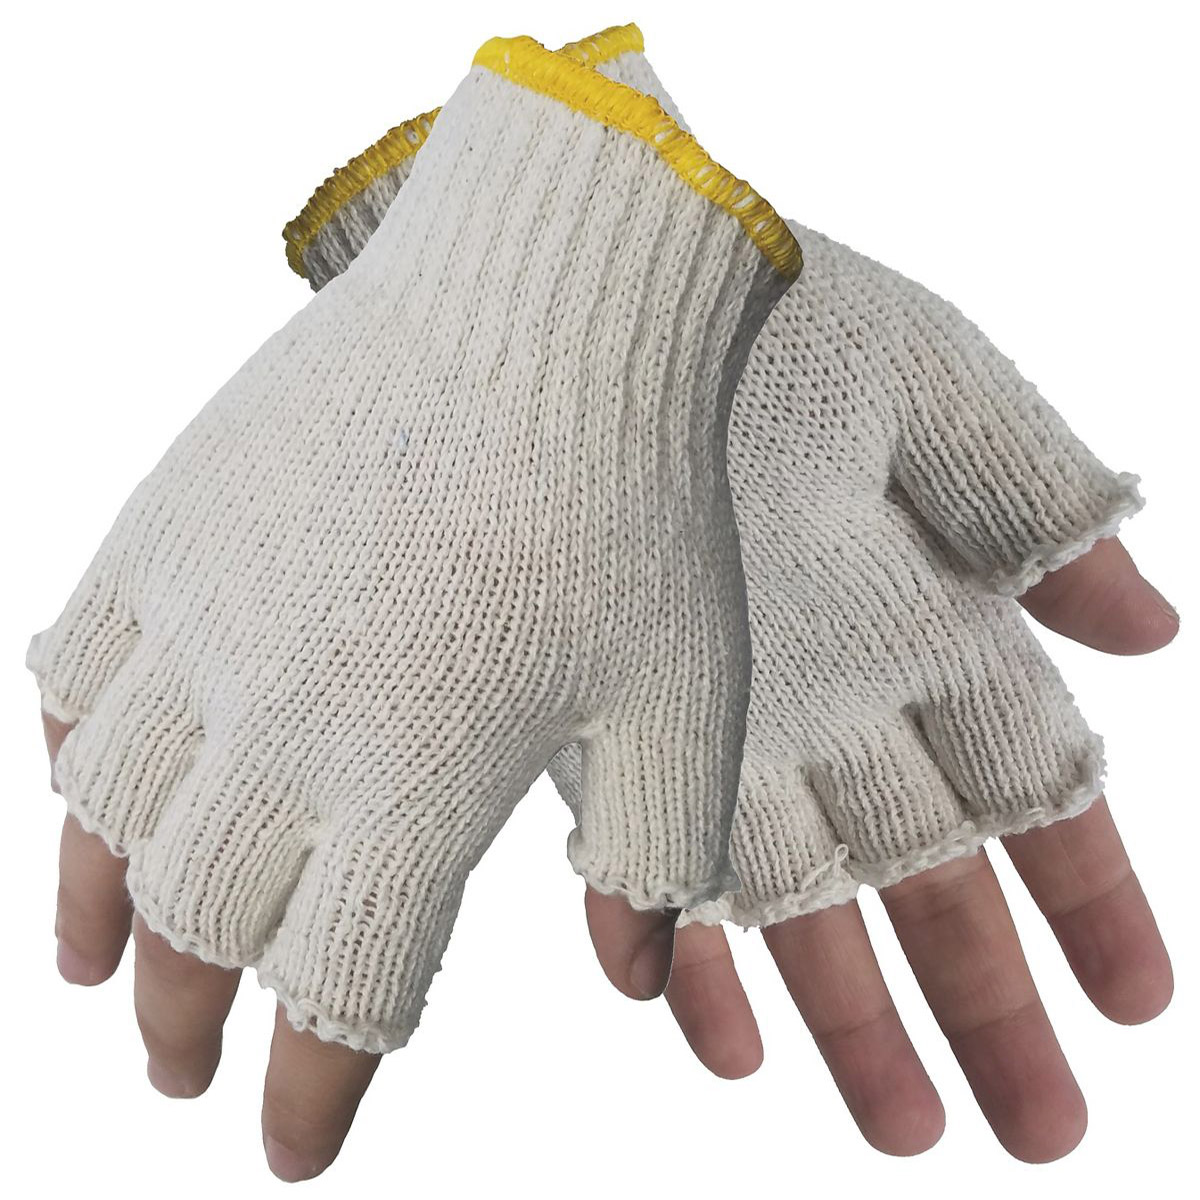 Fingerless String Knit Gloves, Men's Cotton Blend